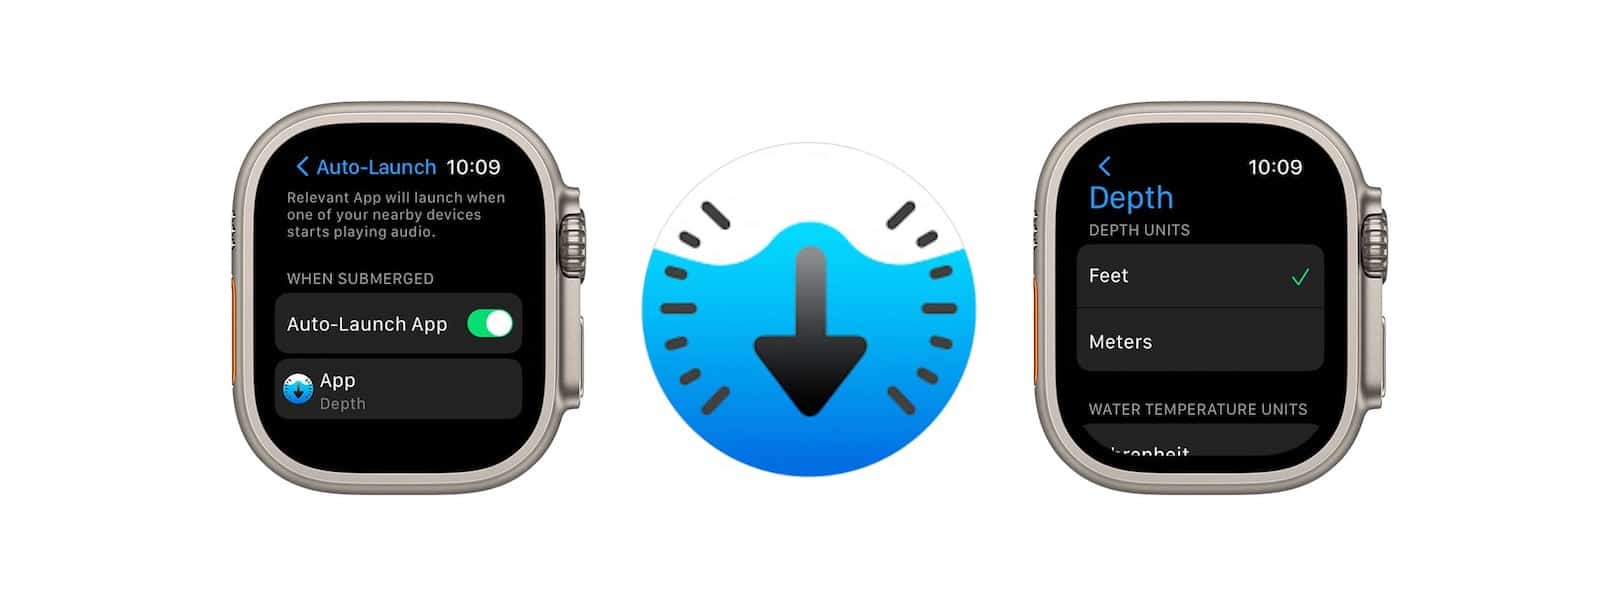 apple Watch ultra - depth app